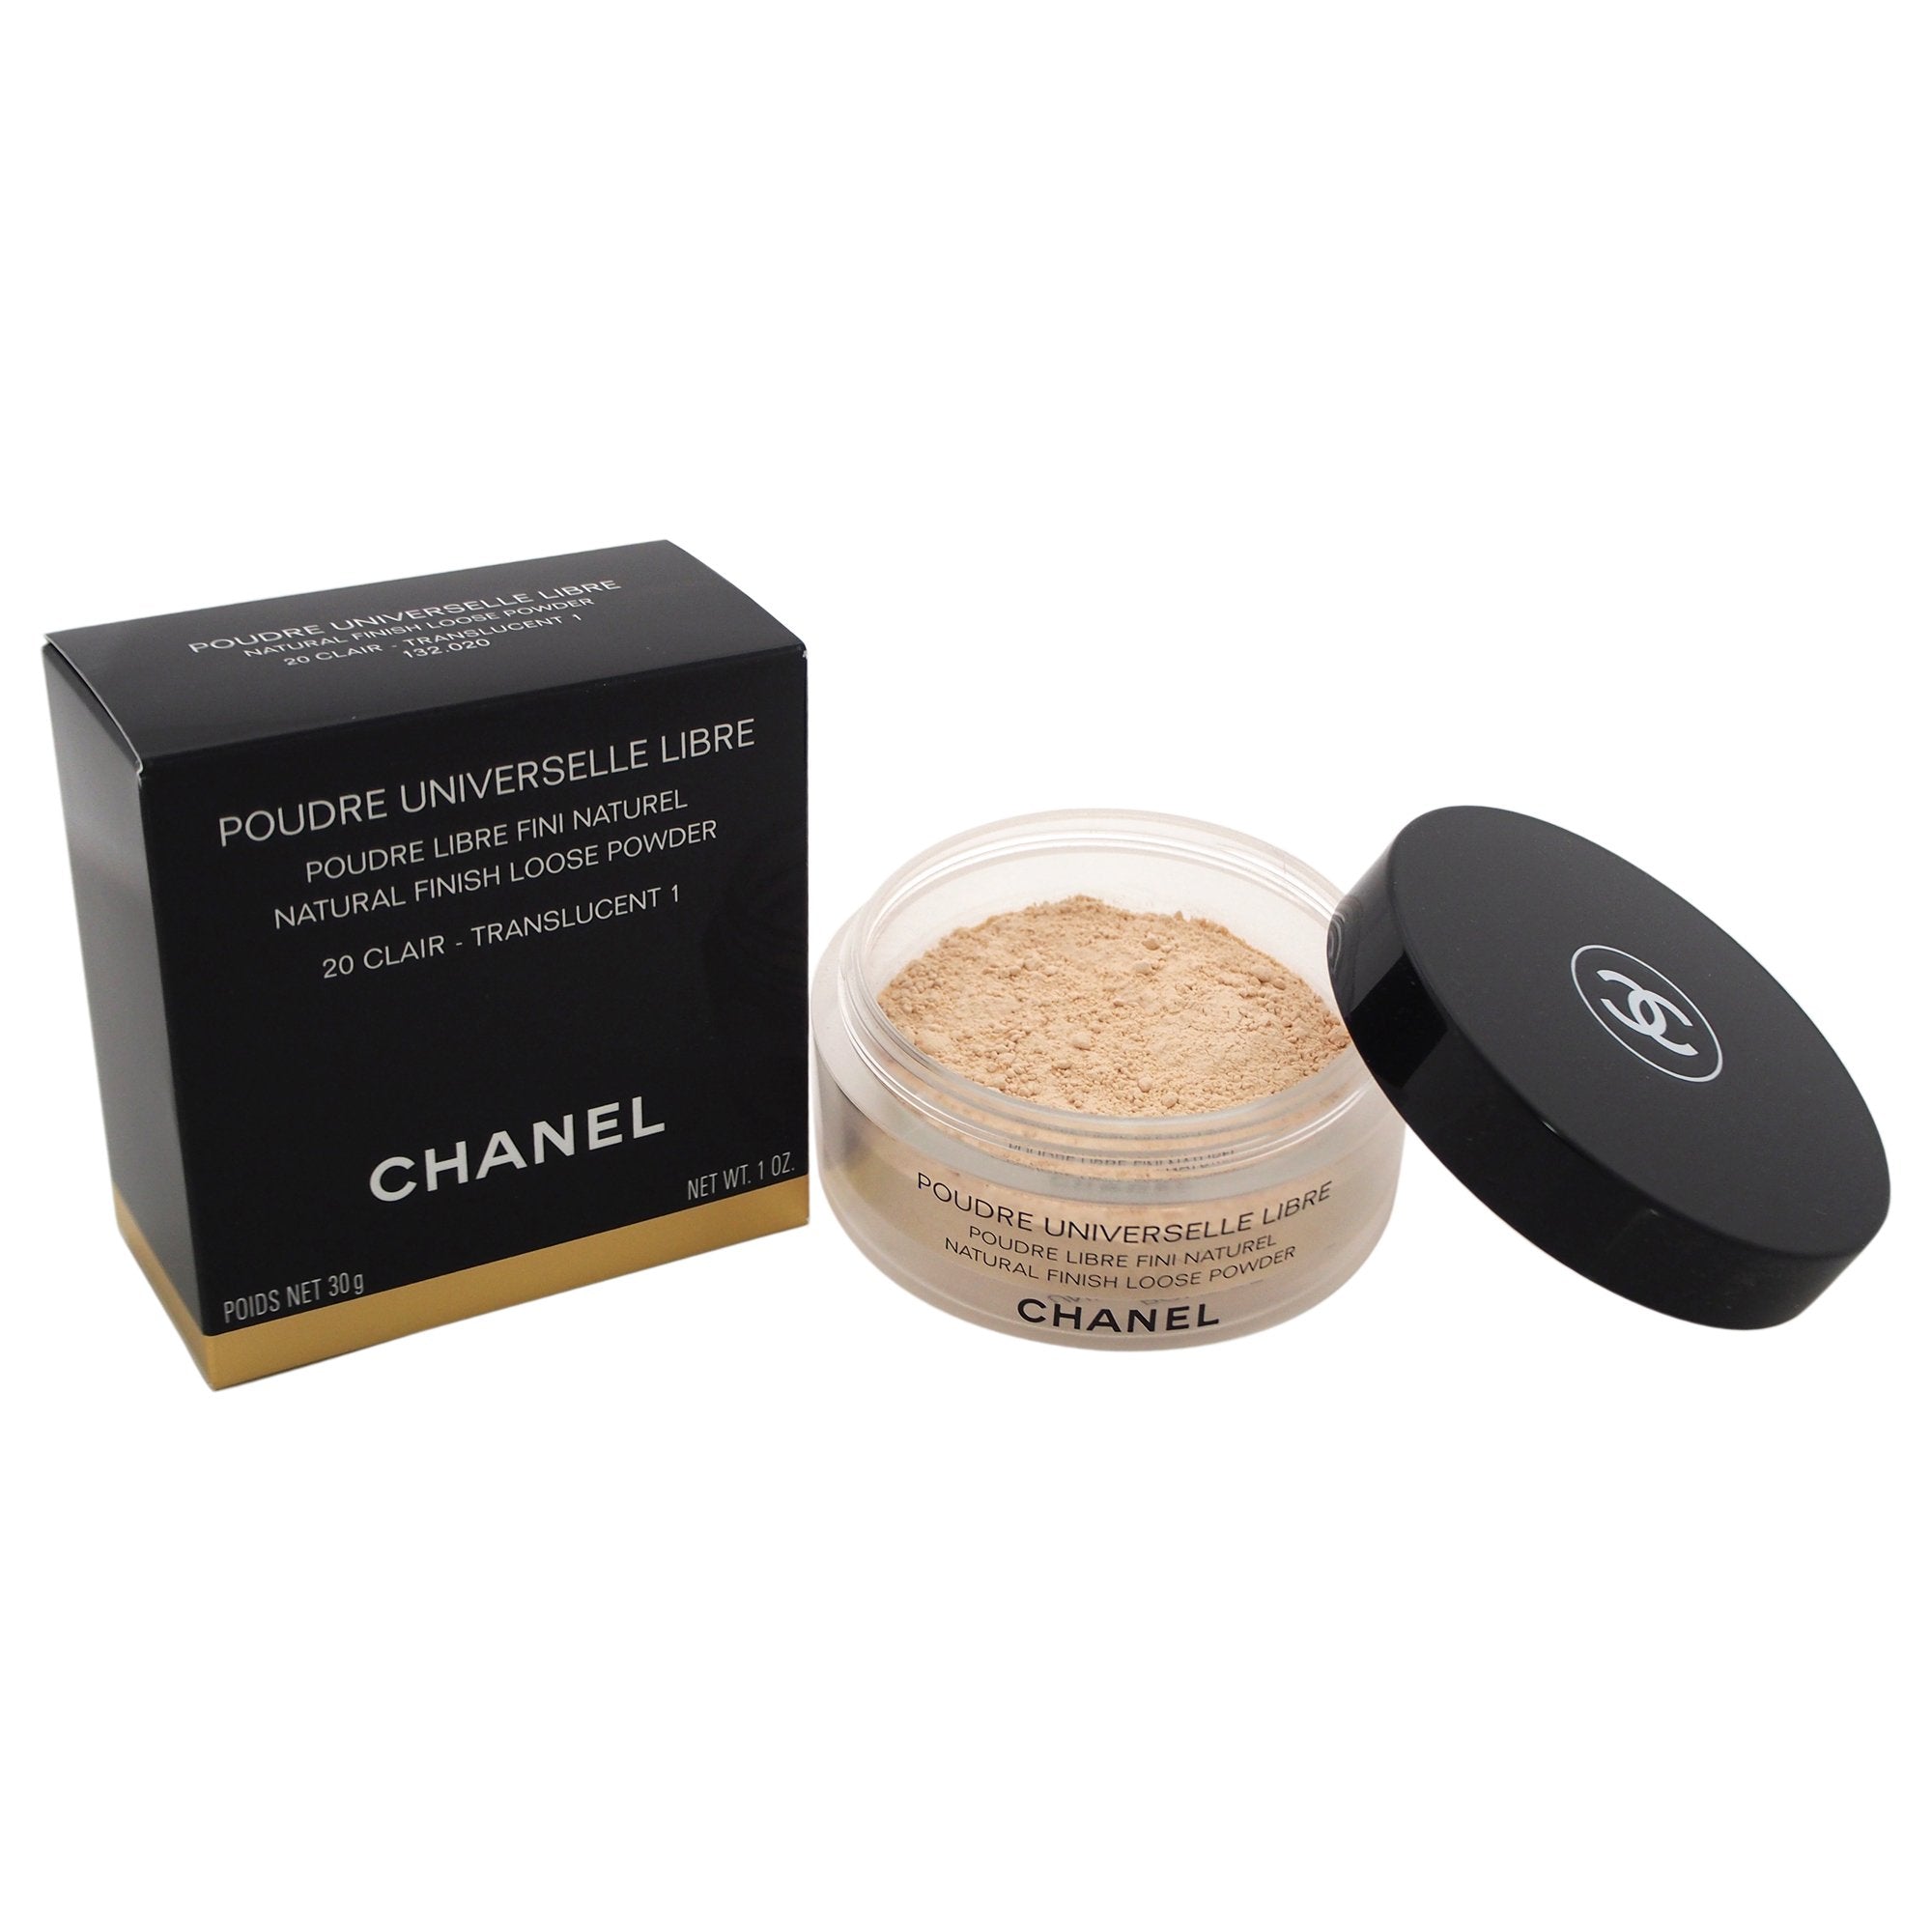 พร้อมส่ง) แป้งฝุ่น ตัวฮิตสุดหรู Chanel Poudre Universelle Libre Natural  Finish Loose Powder